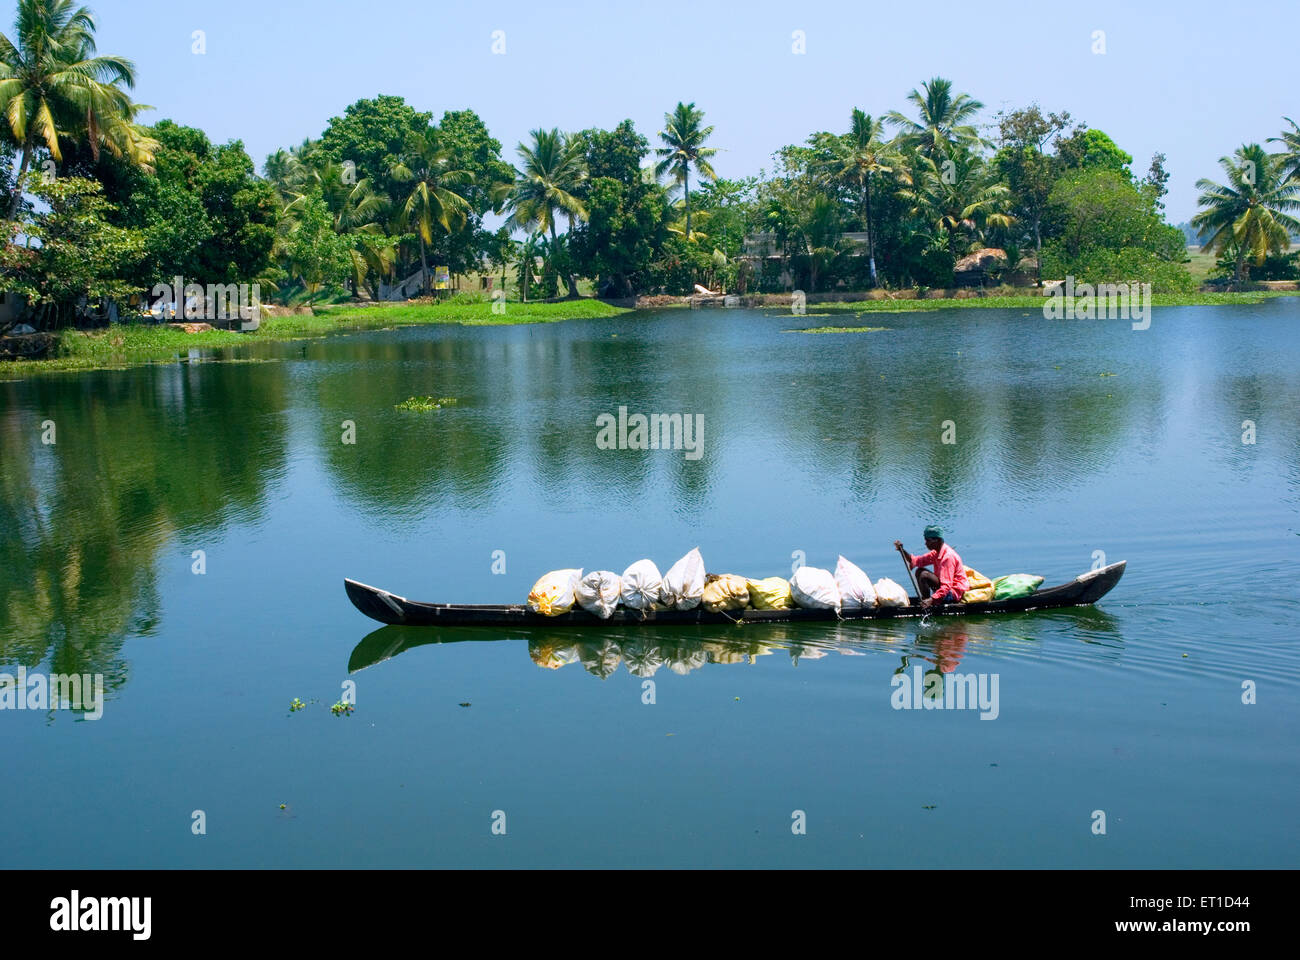 Man carrying big bags on boat in ashtamudi river ; Kollam ; Alleppey ; Kerala ; India Stock Photo